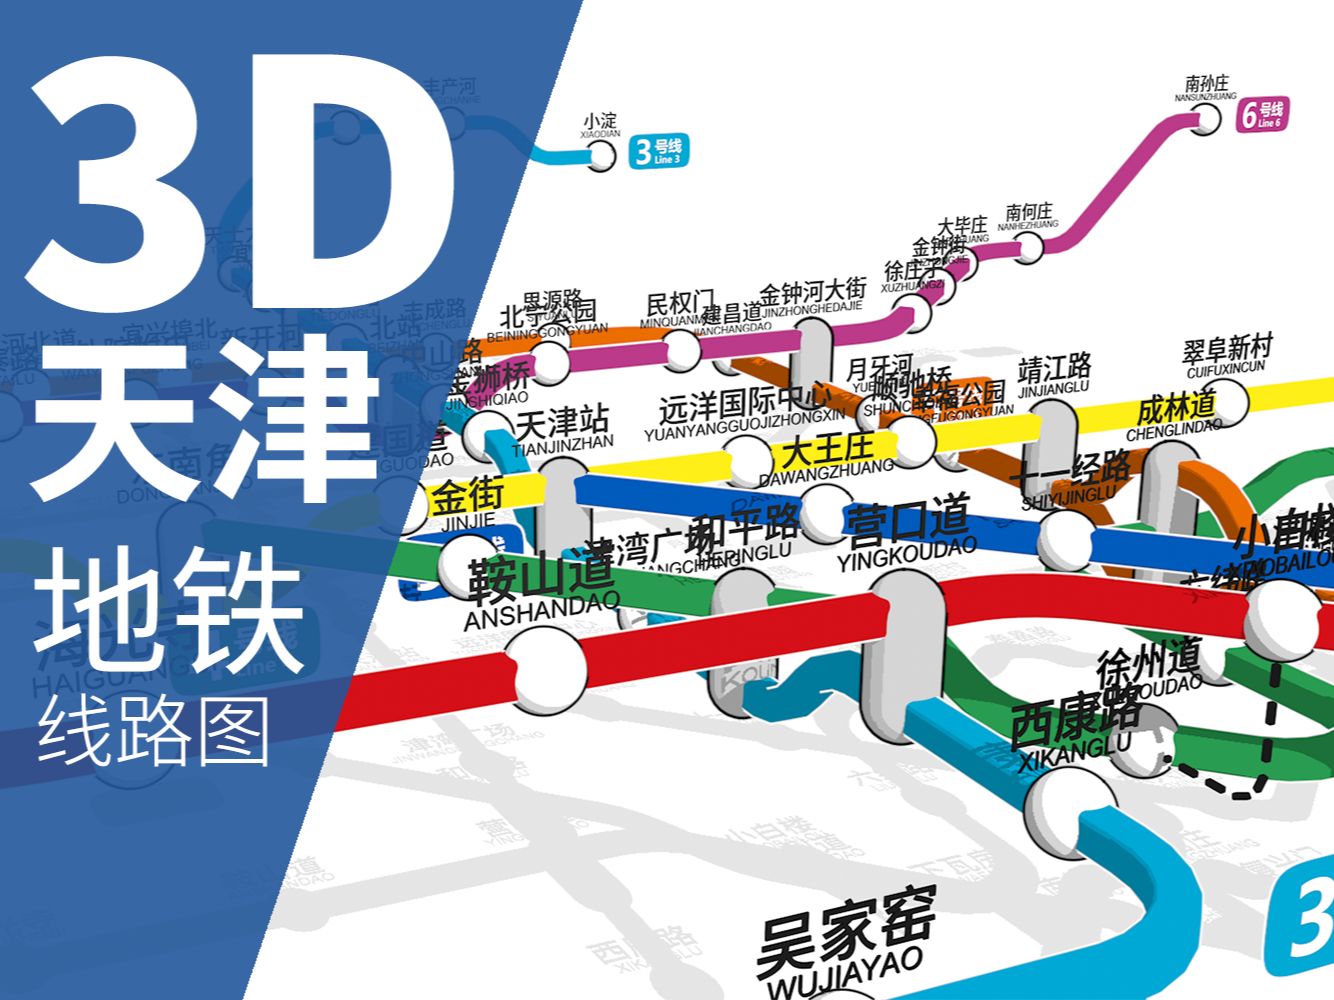 【天津地铁】我画了一张3D立体的天津地铁线路图